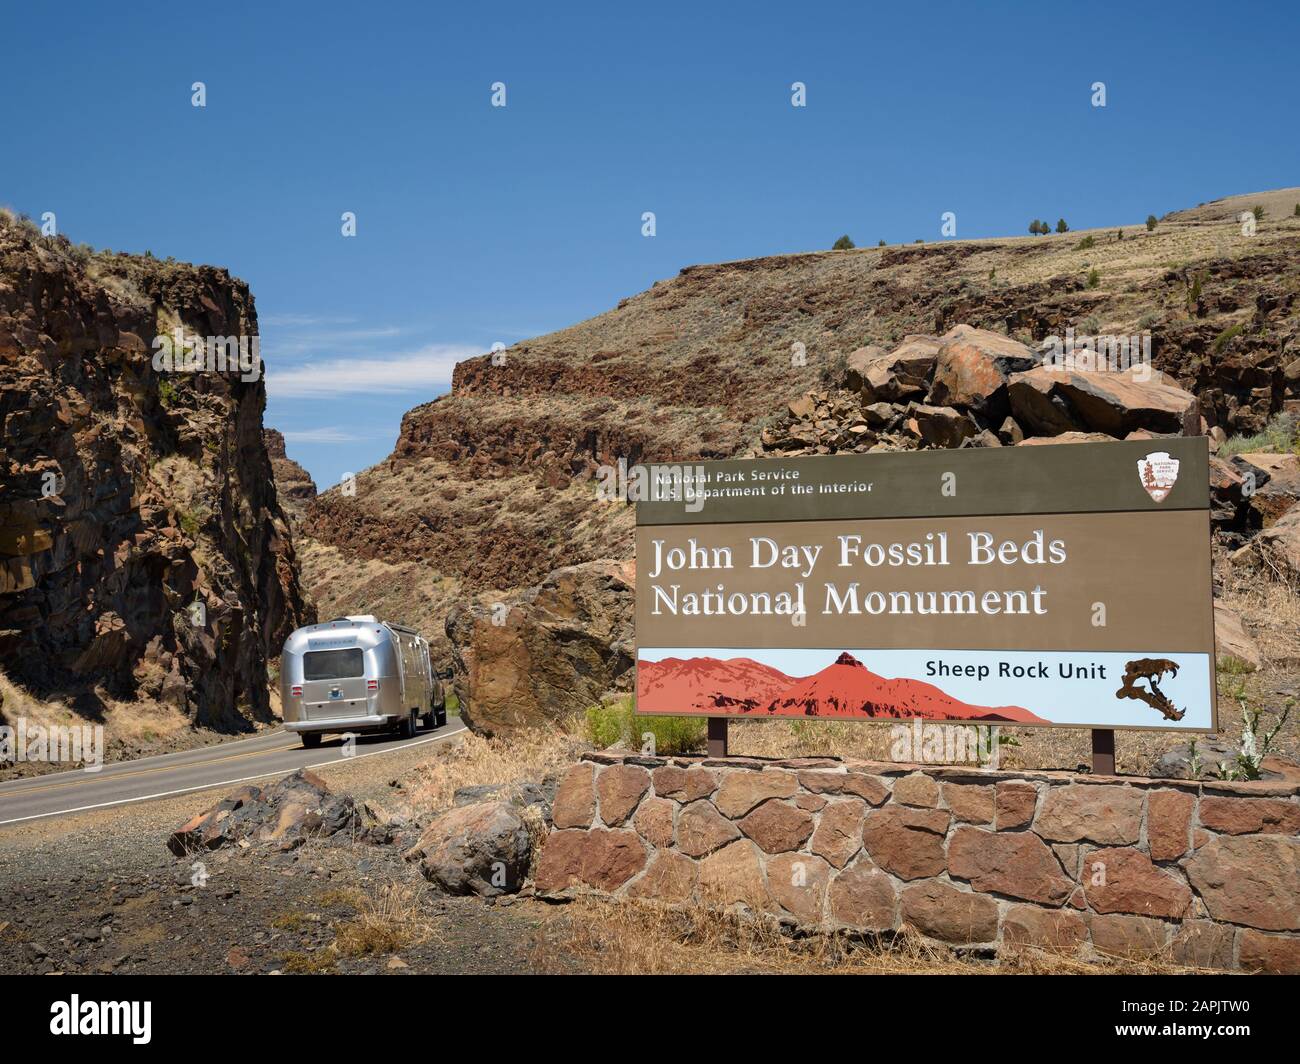 Prenez la remorque sur l'US Highway 26 dans Picture gorge à l'entrée du monument national Sheep Rock Unit of John Day Fossil Beds dans l'est de l'Oregon. Banque D'Images